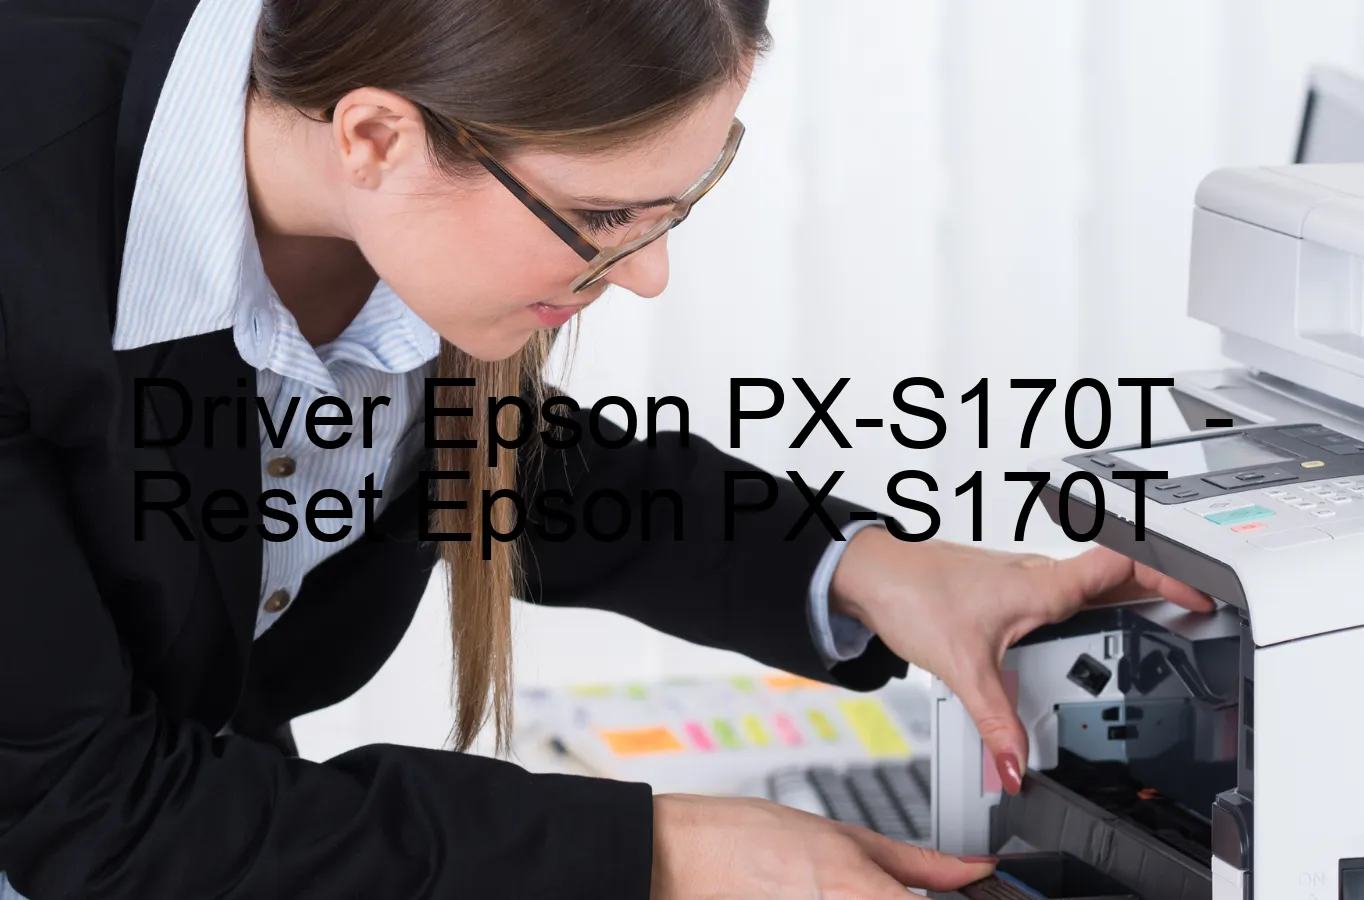 Epson PX-S170Tのドライバー、Epson PX-S170Tのリセットソフトウェア